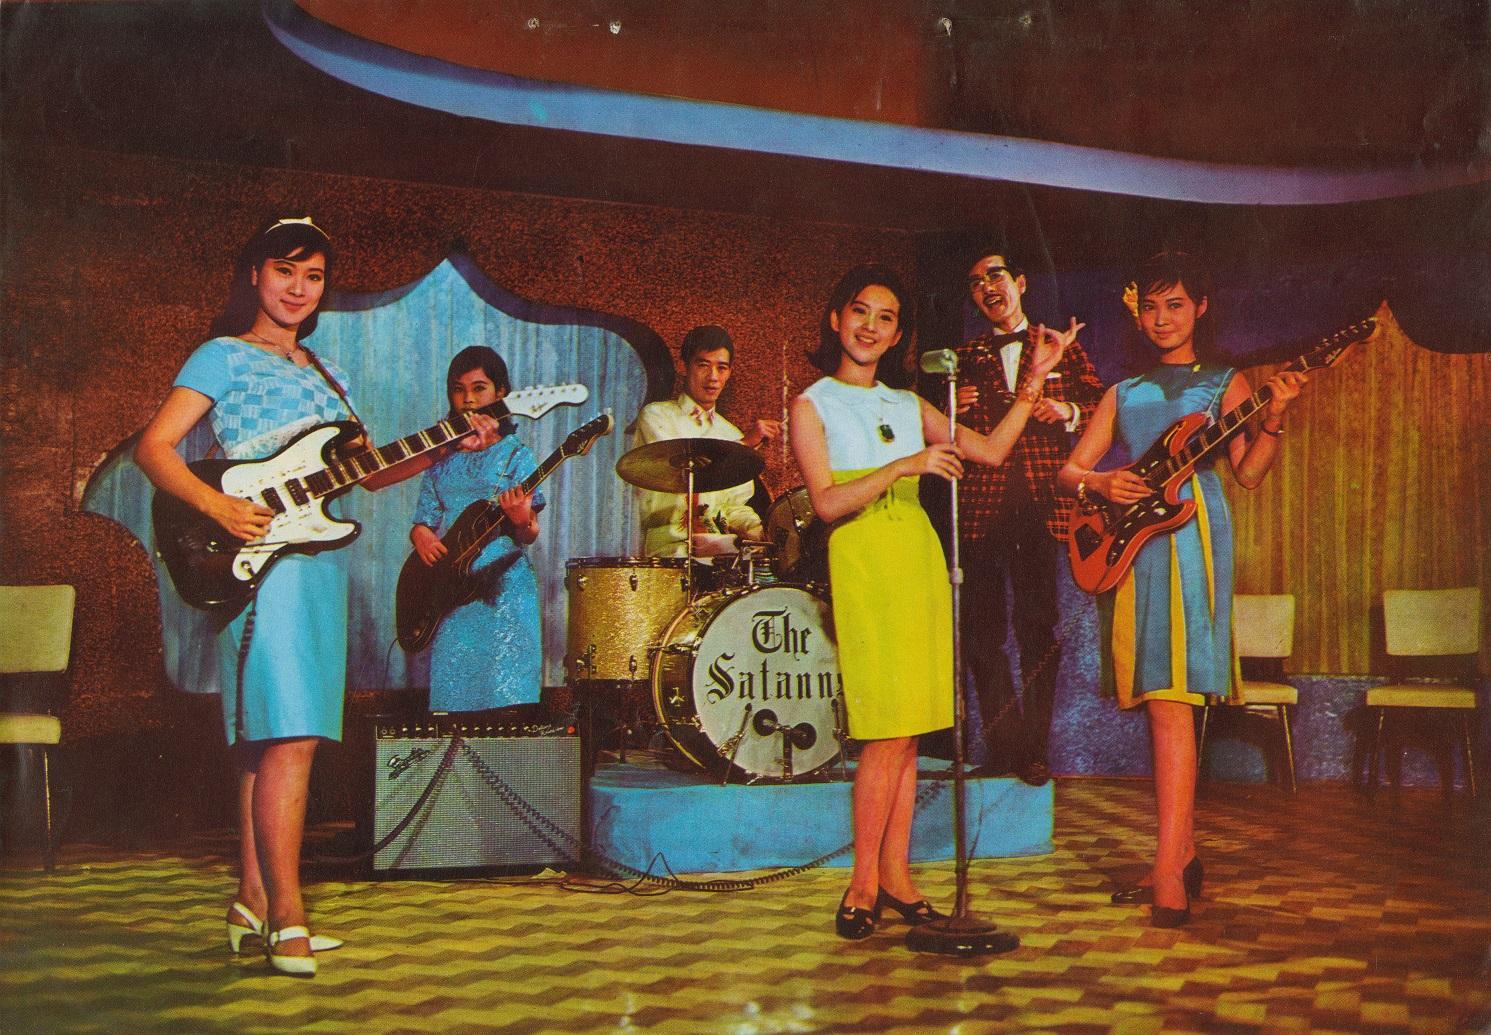 康樂及文化事務署香港電影資料館由一月二十七日至五月五日，逢星期五上午十一時的「影畫早晨」節目將以「歌舞昇平」為題，選映十五部不同年代的香港歌舞電影，讓觀眾在銀幕上重溫華麗的歌舞場面和風靡一時的時代曲。圖示《彩色青春》（修復版）（1966）劇照。